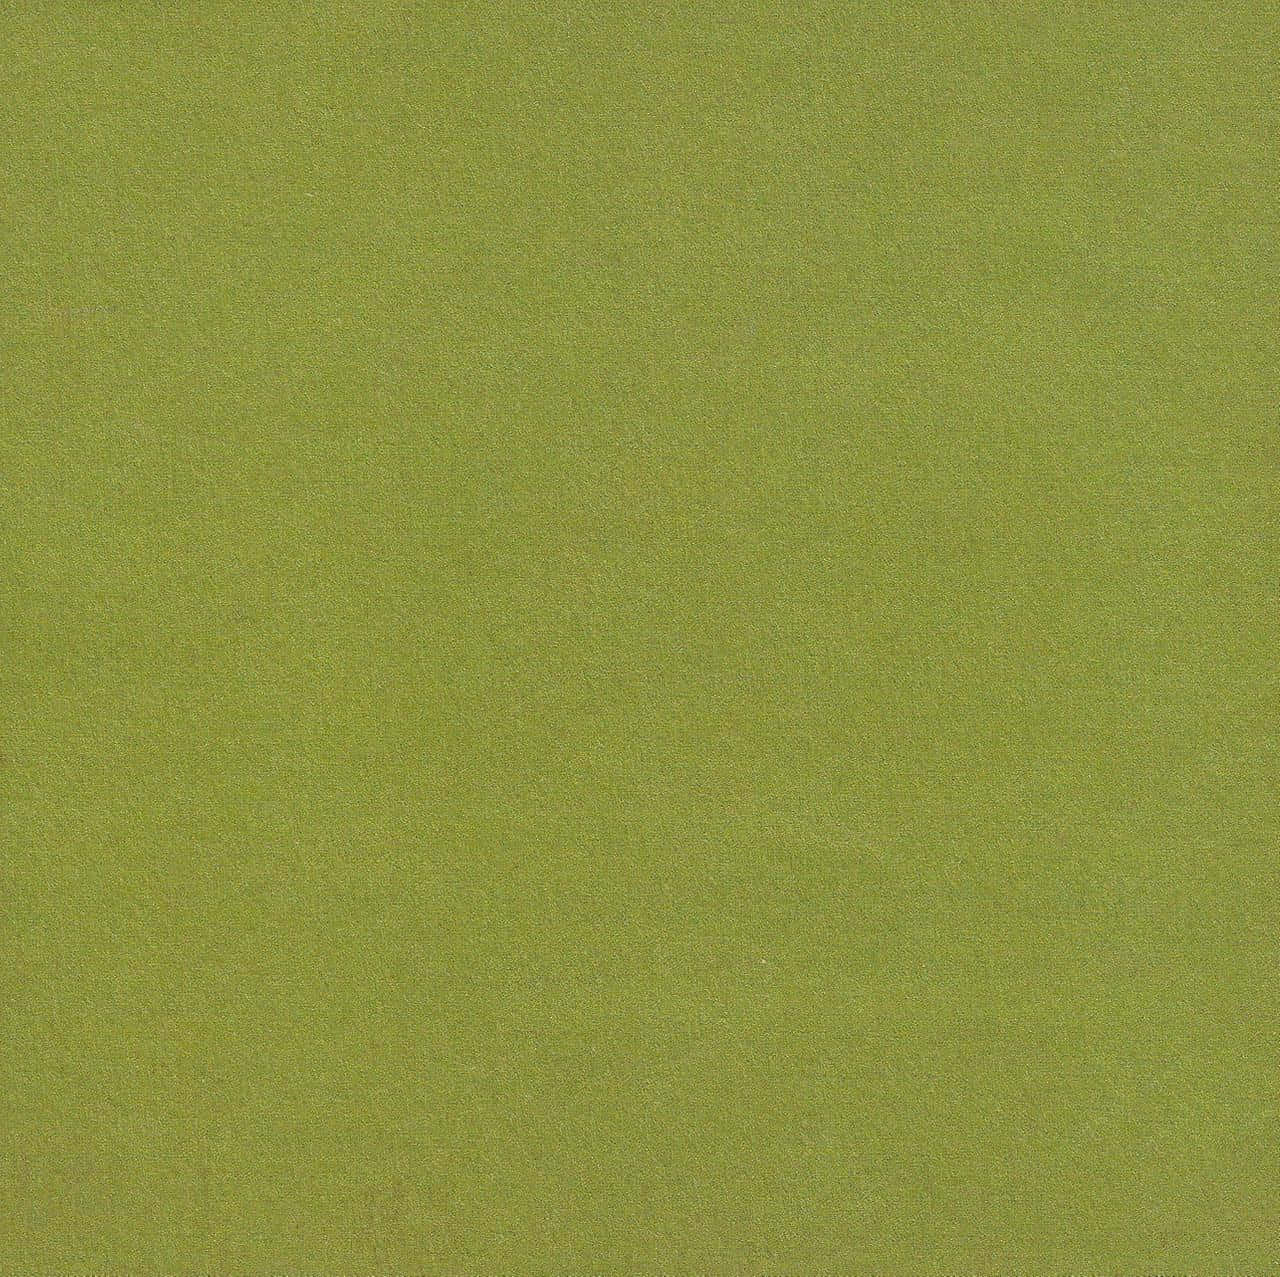 Elegant Olive Green Texture Wallpaper